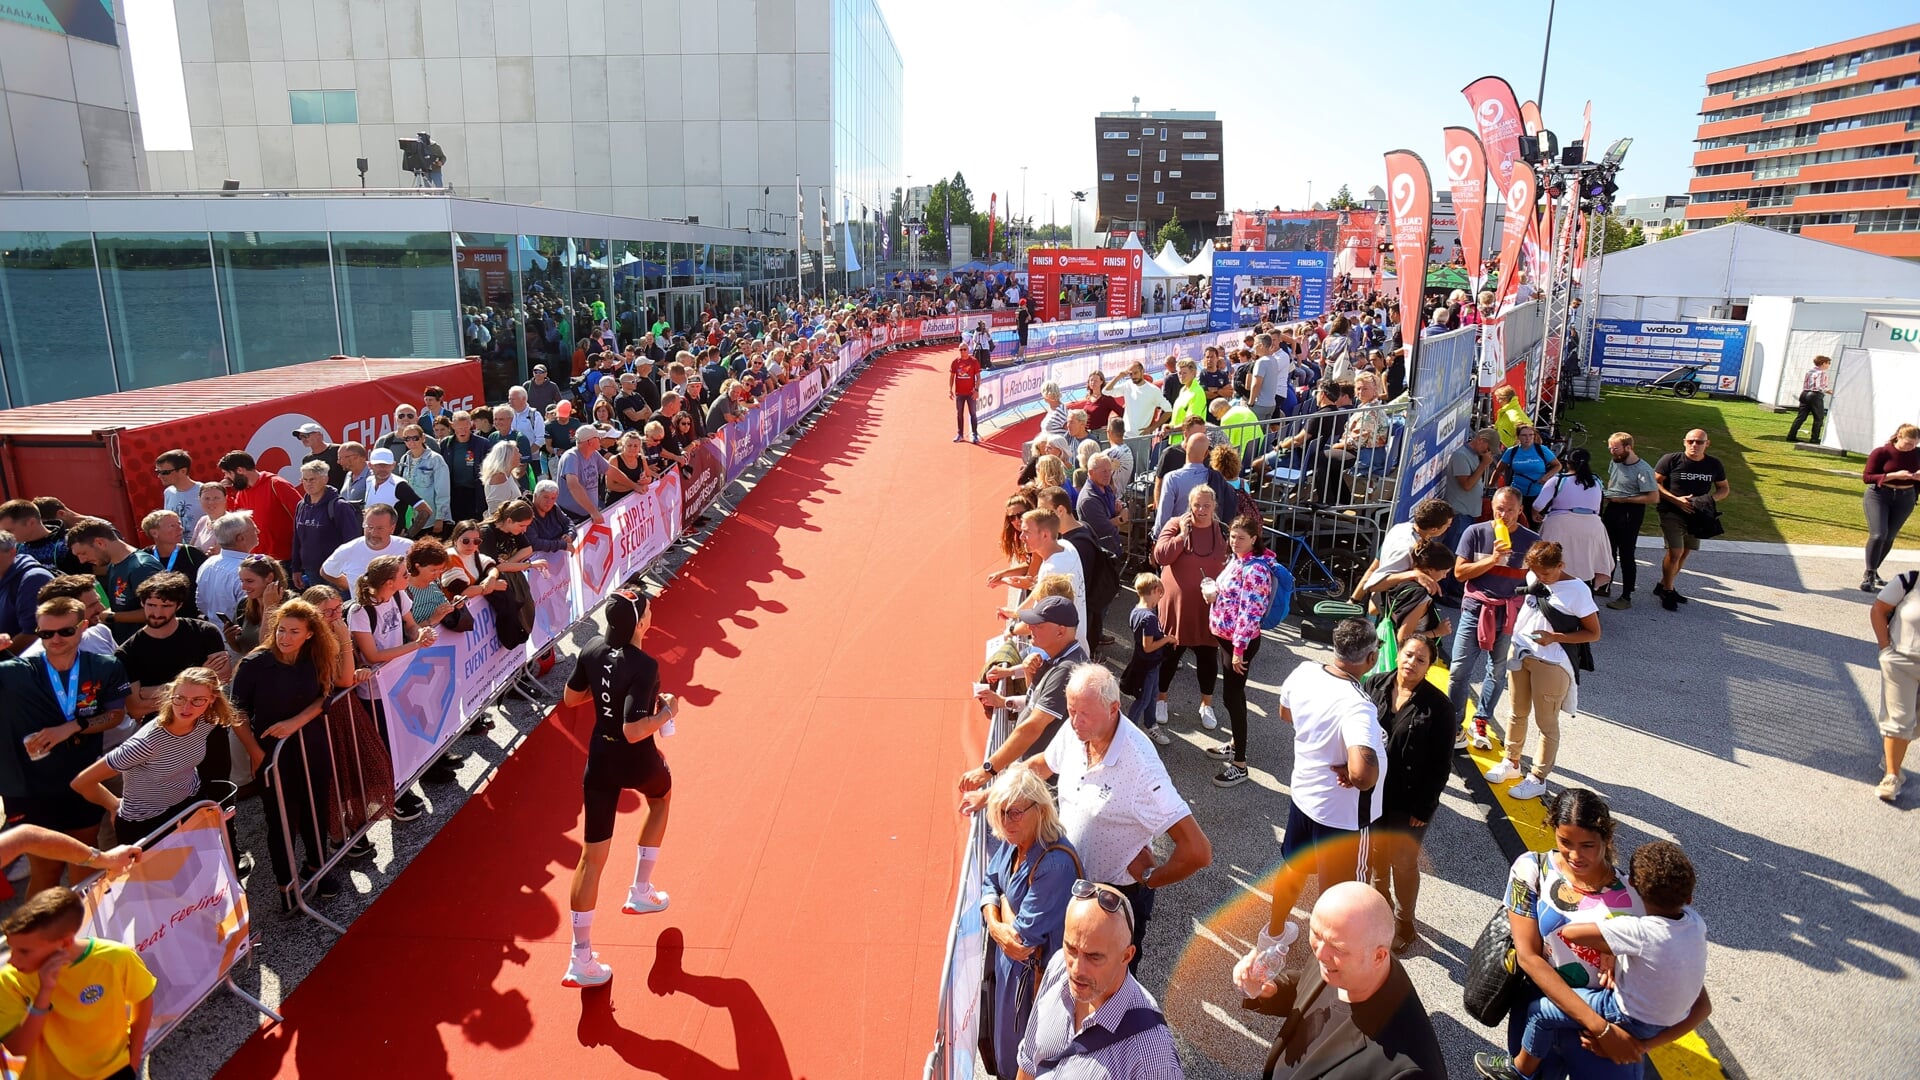 De triatlon is een evenement dat Almere toeristisch op de kaart zet, zegt ACM. (Archieffoto: Fred Rotgans)